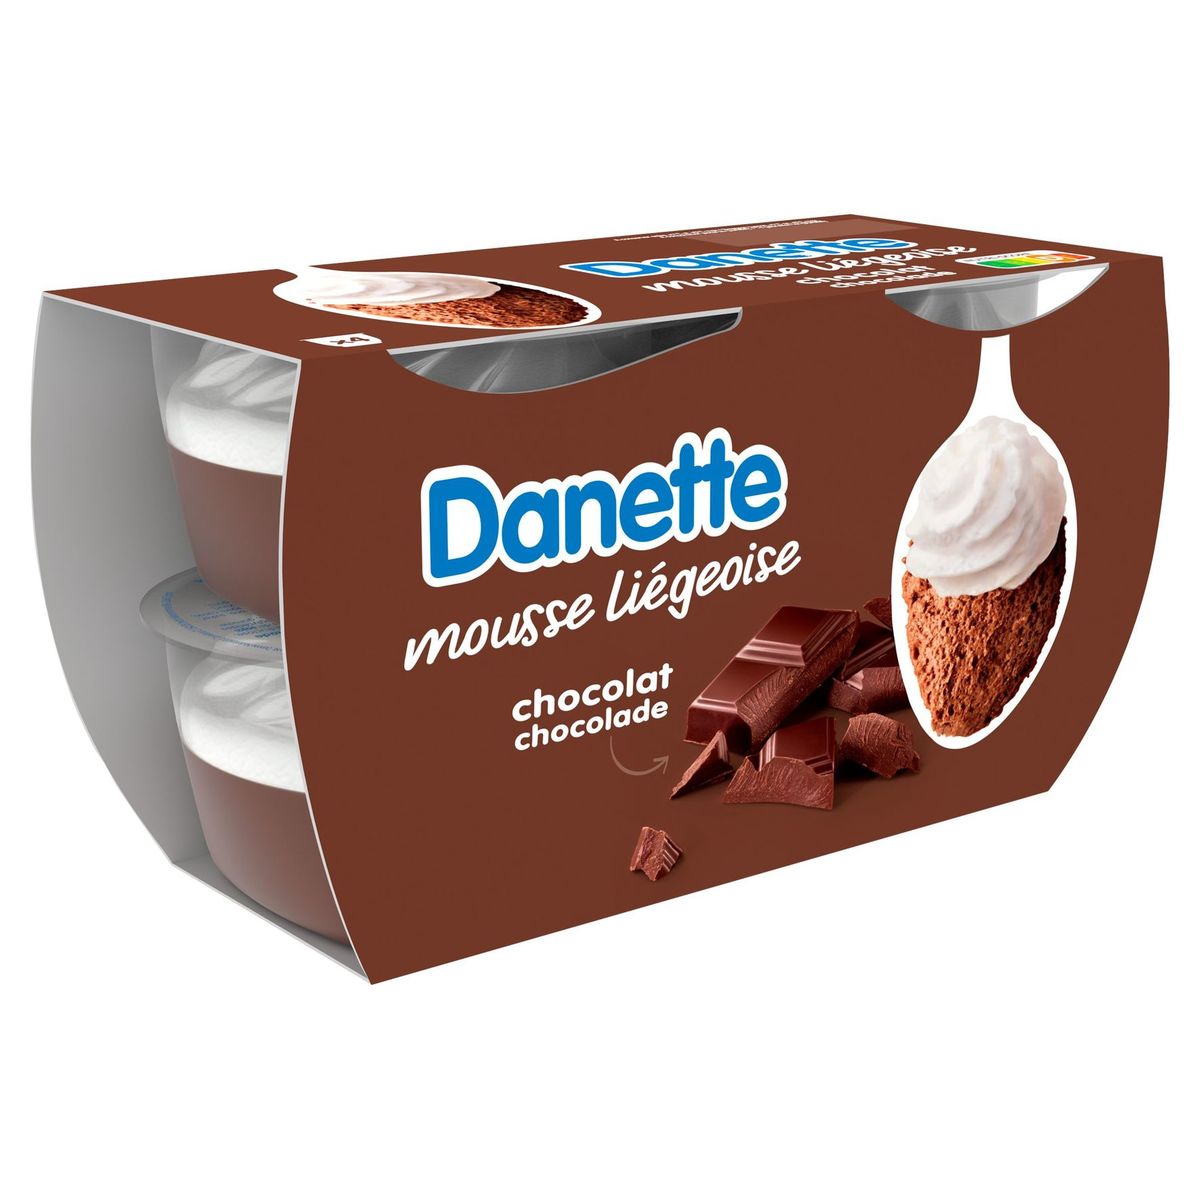 Danette Mousse Liégeoise Chocolat 4 x 80 g